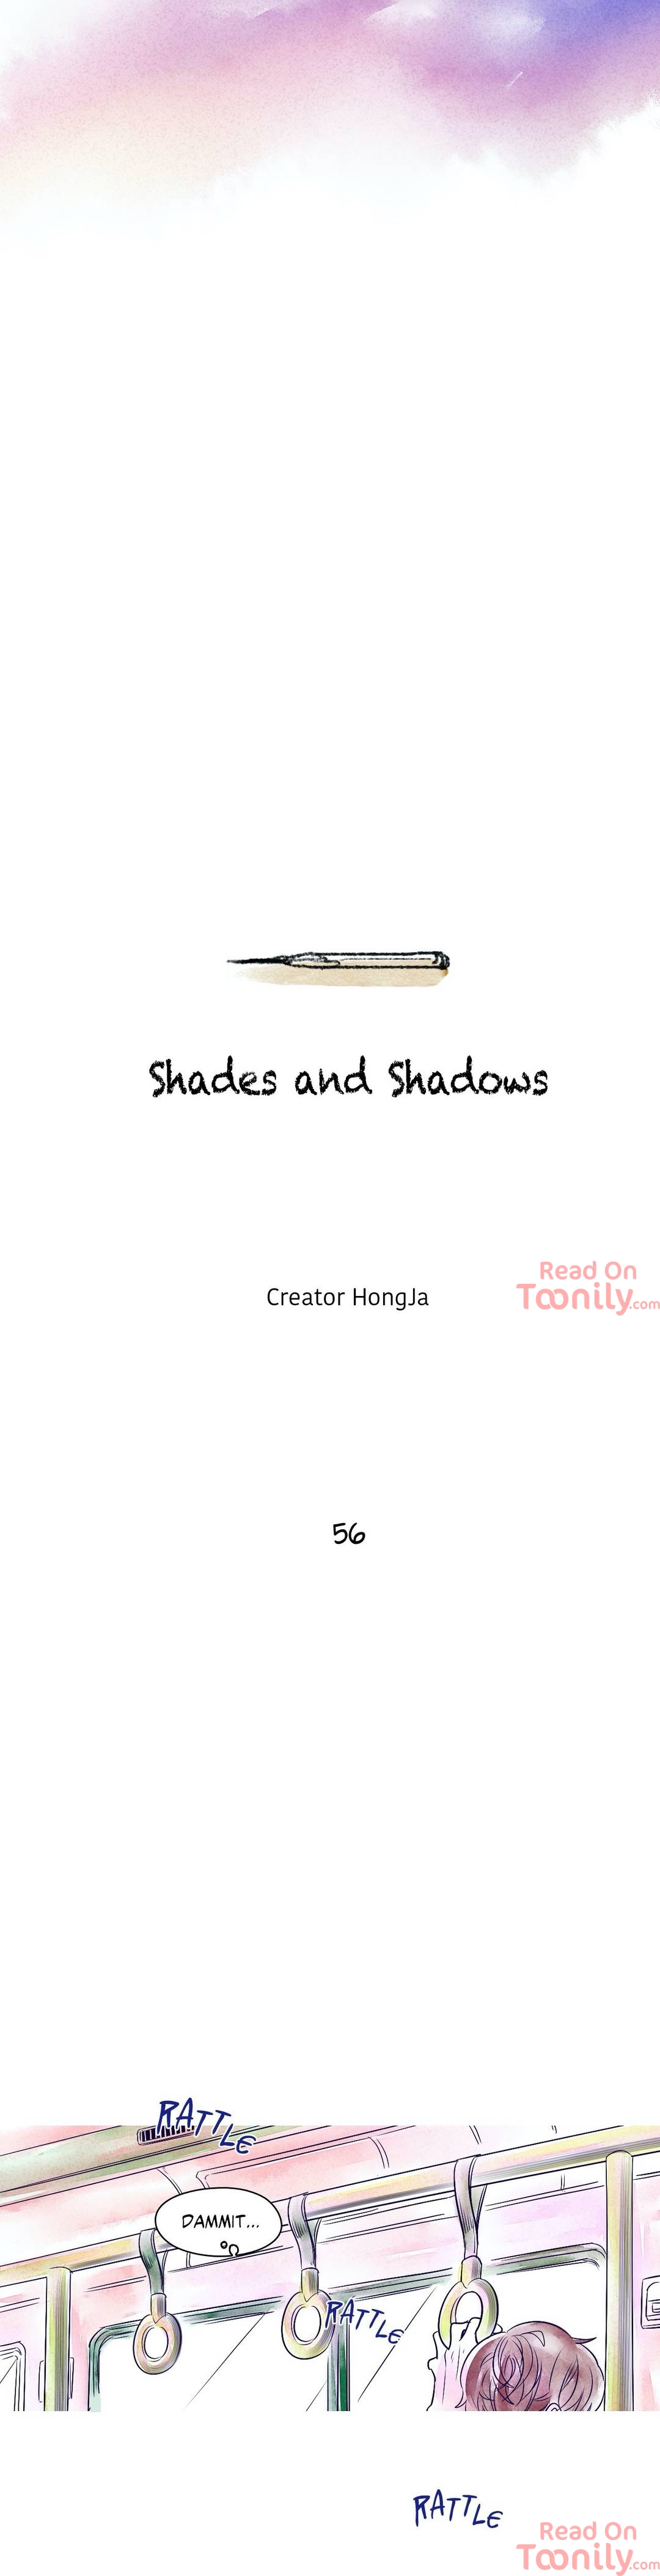 Shades and Shadows image